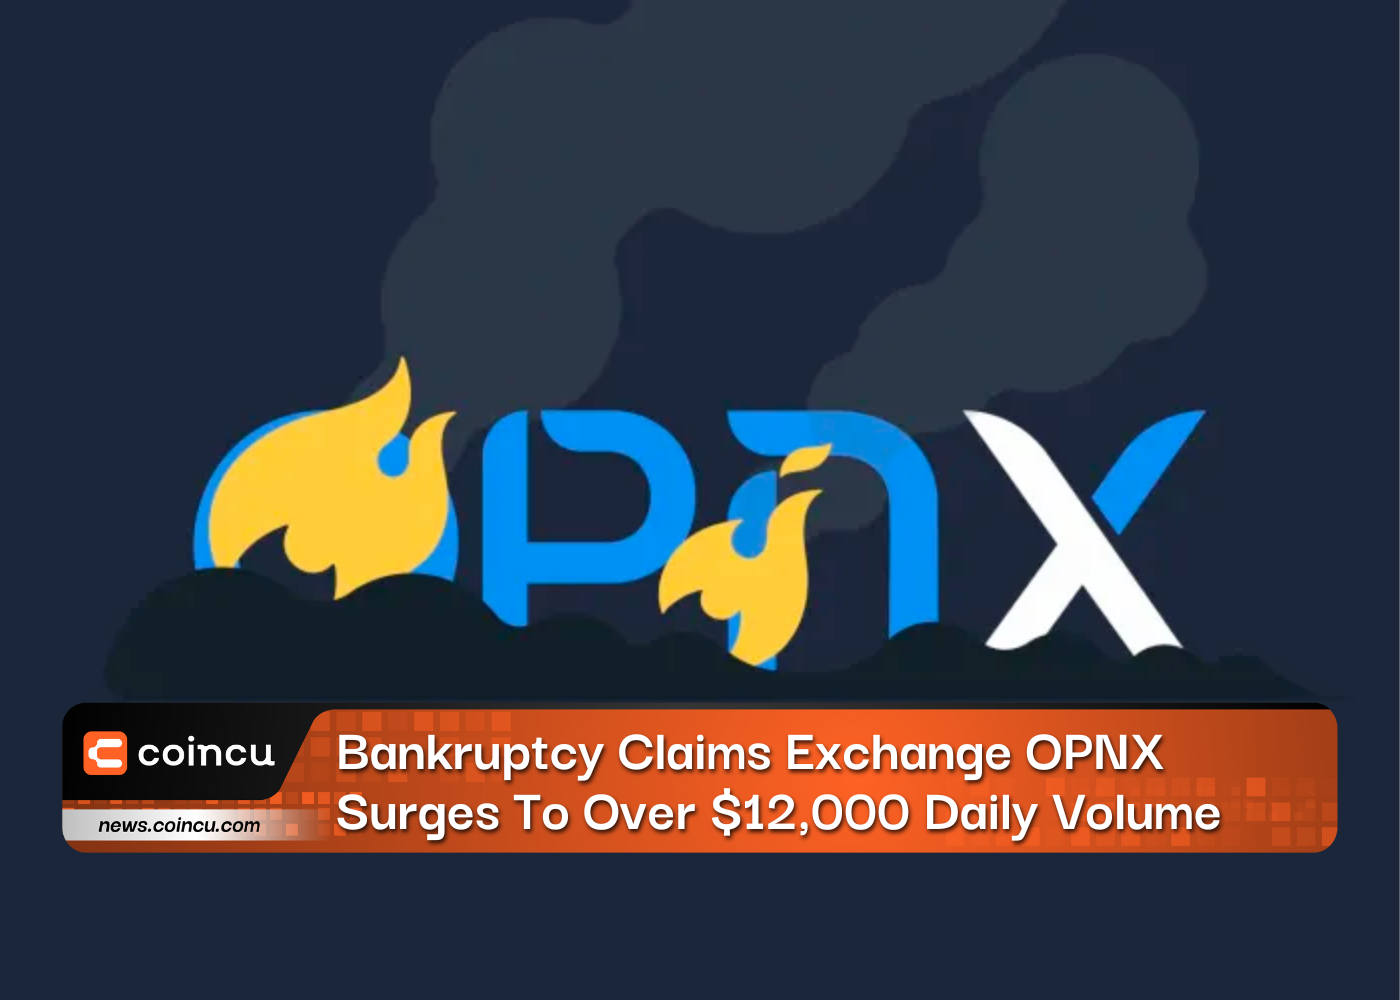 破产索赔交易所 OPNX 每日交易量飙升至超过 12,000 美元